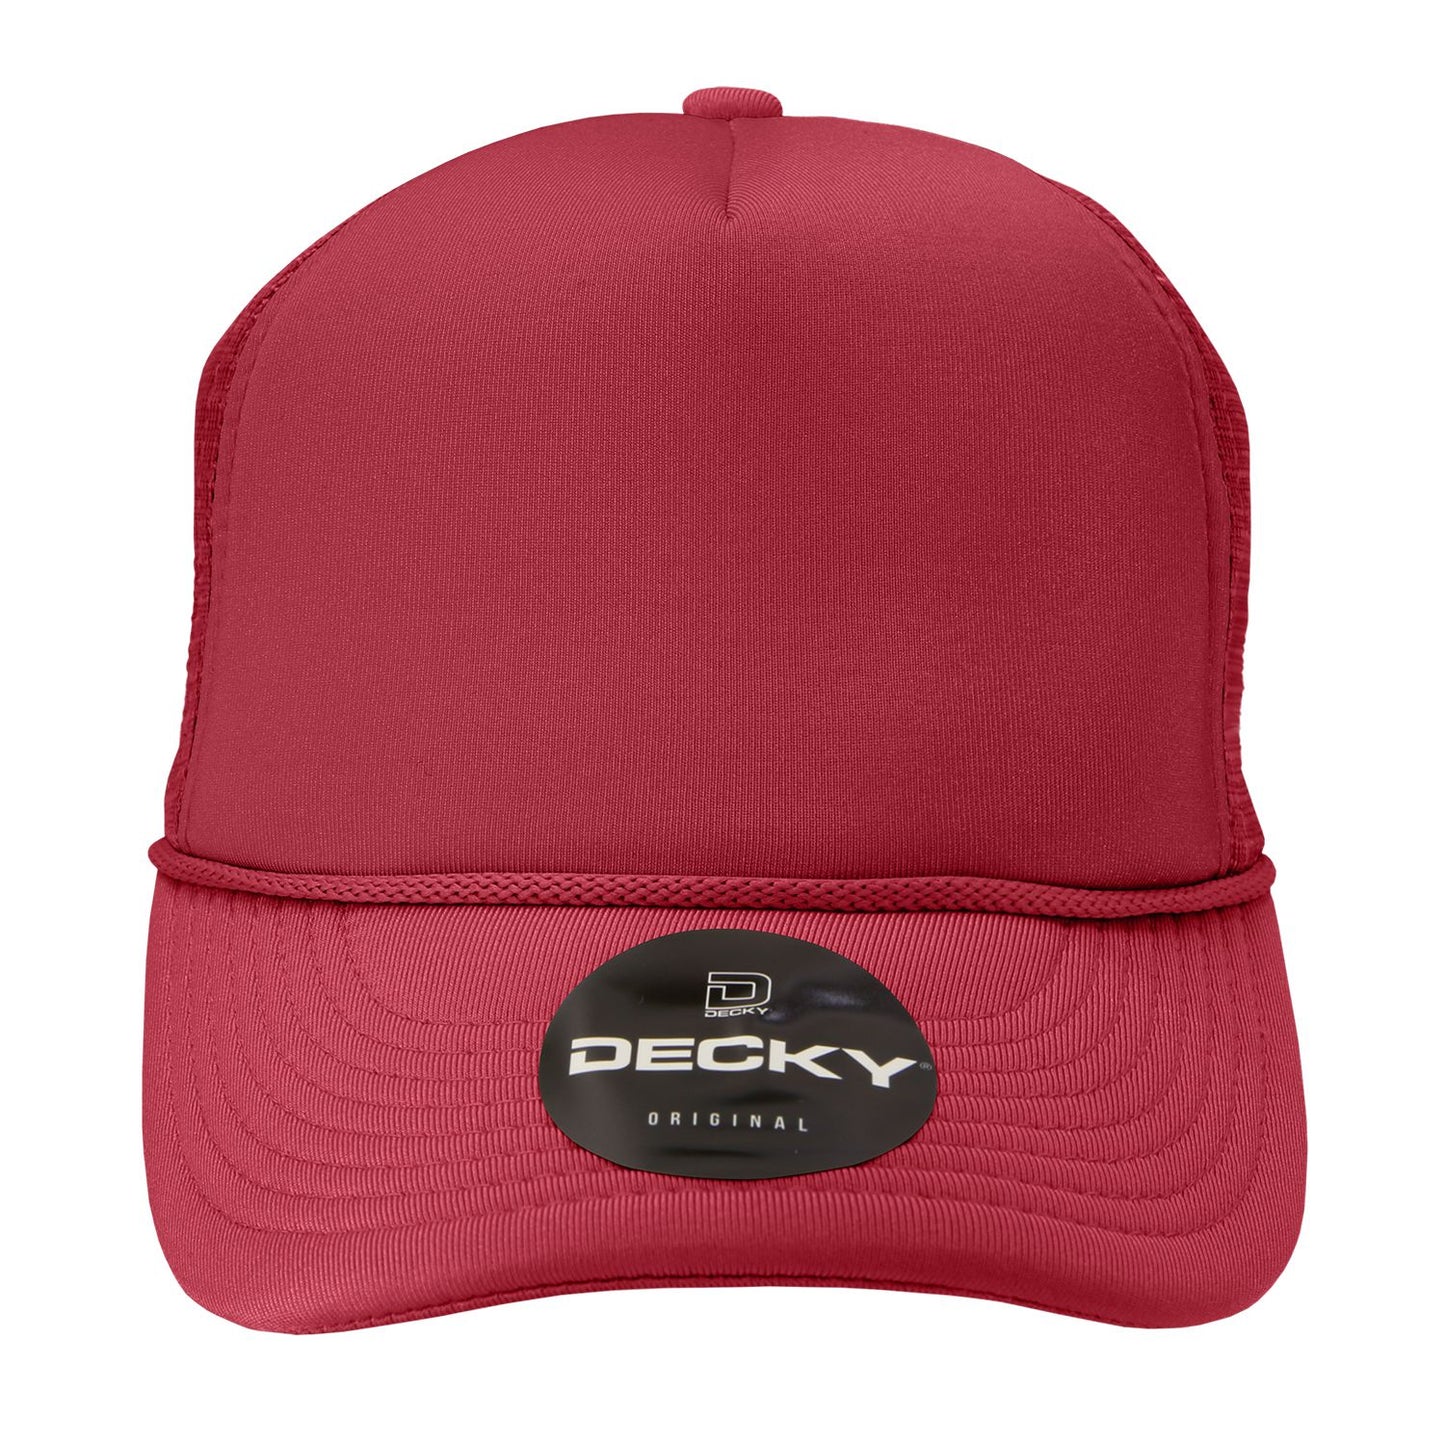 Decky 211 5-Panel Foam Trucker Cap Mesh Back Hat - Blank